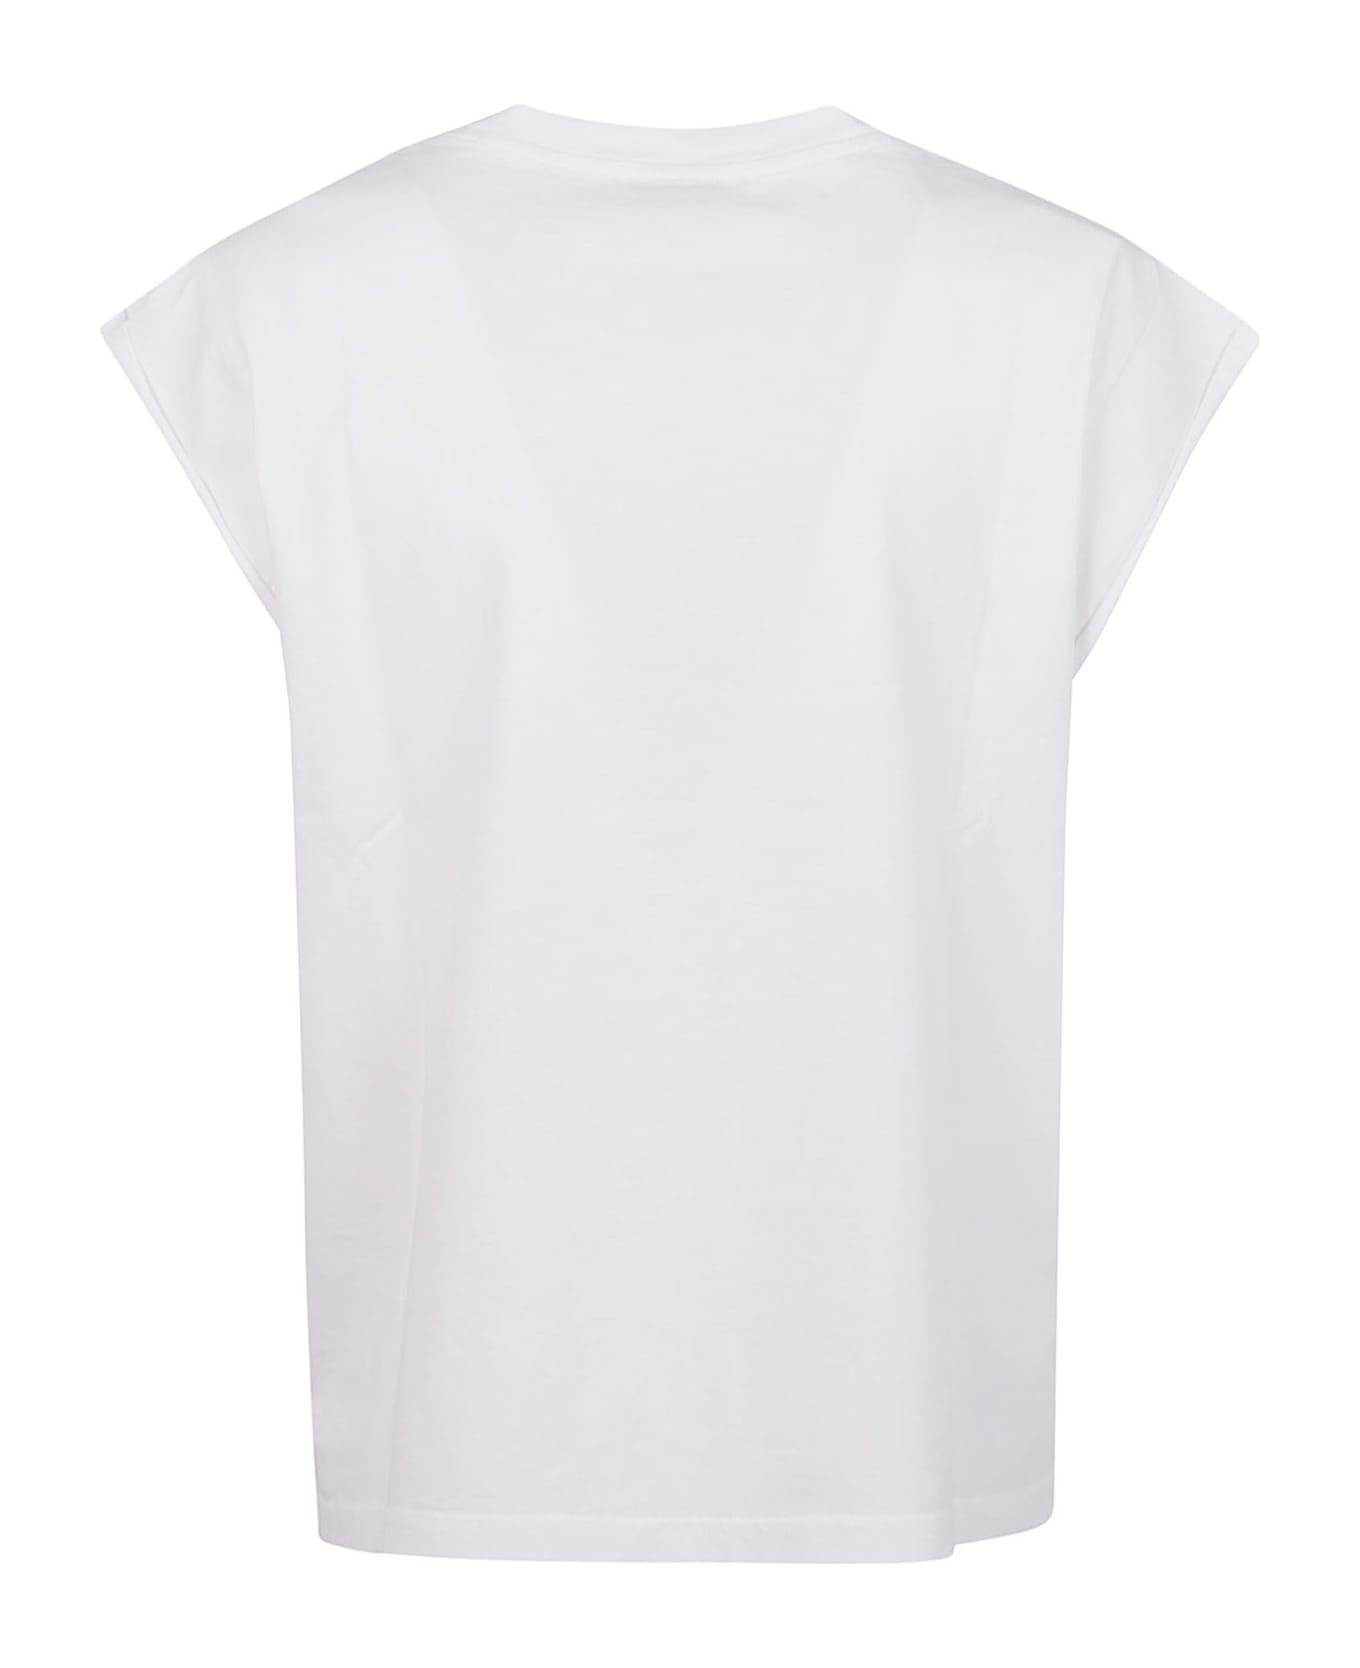 Maison Labiche T-shirts And Polos White - White Tシャツ